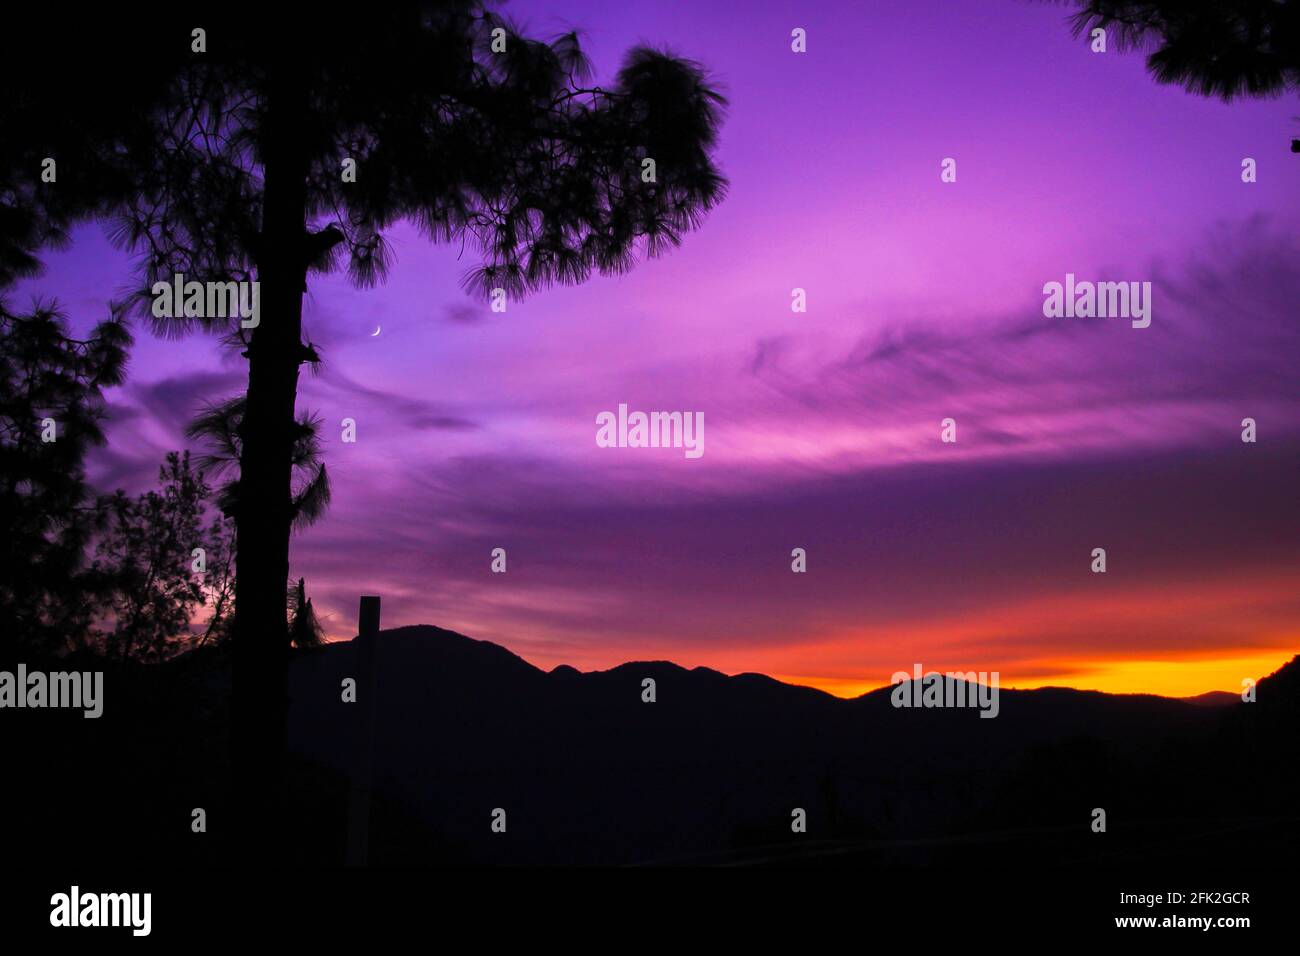 Paisaje montañoso con luna creciente, cielo púrpura y cedro Foto de stock